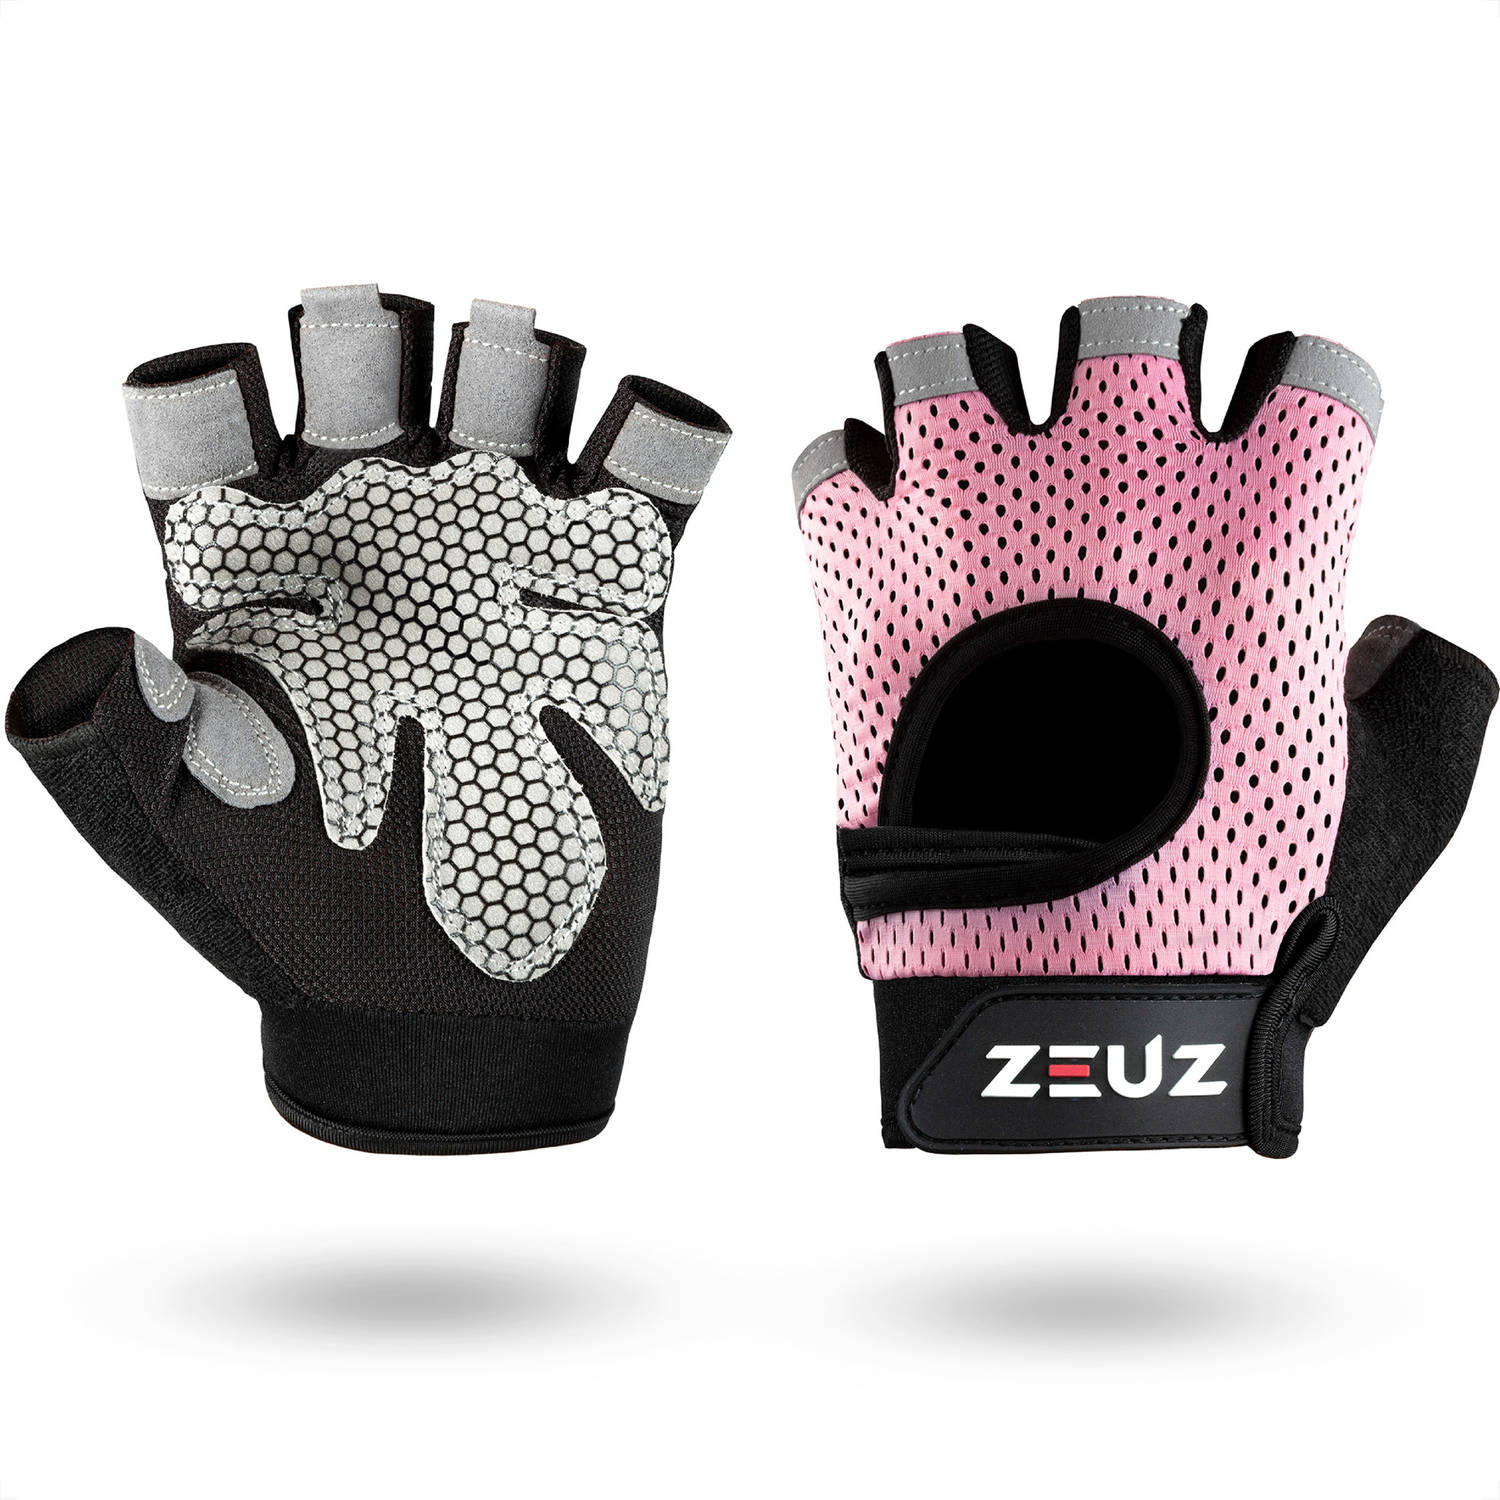 ZEUZ® Sport & Fitness Handschoenen Dames – Krachttraining Artikelen – Gym & Crossfit Training – Roze & Zwart – Gloves voor meer grip en bescherming tegen blaren & eelt - Maat S